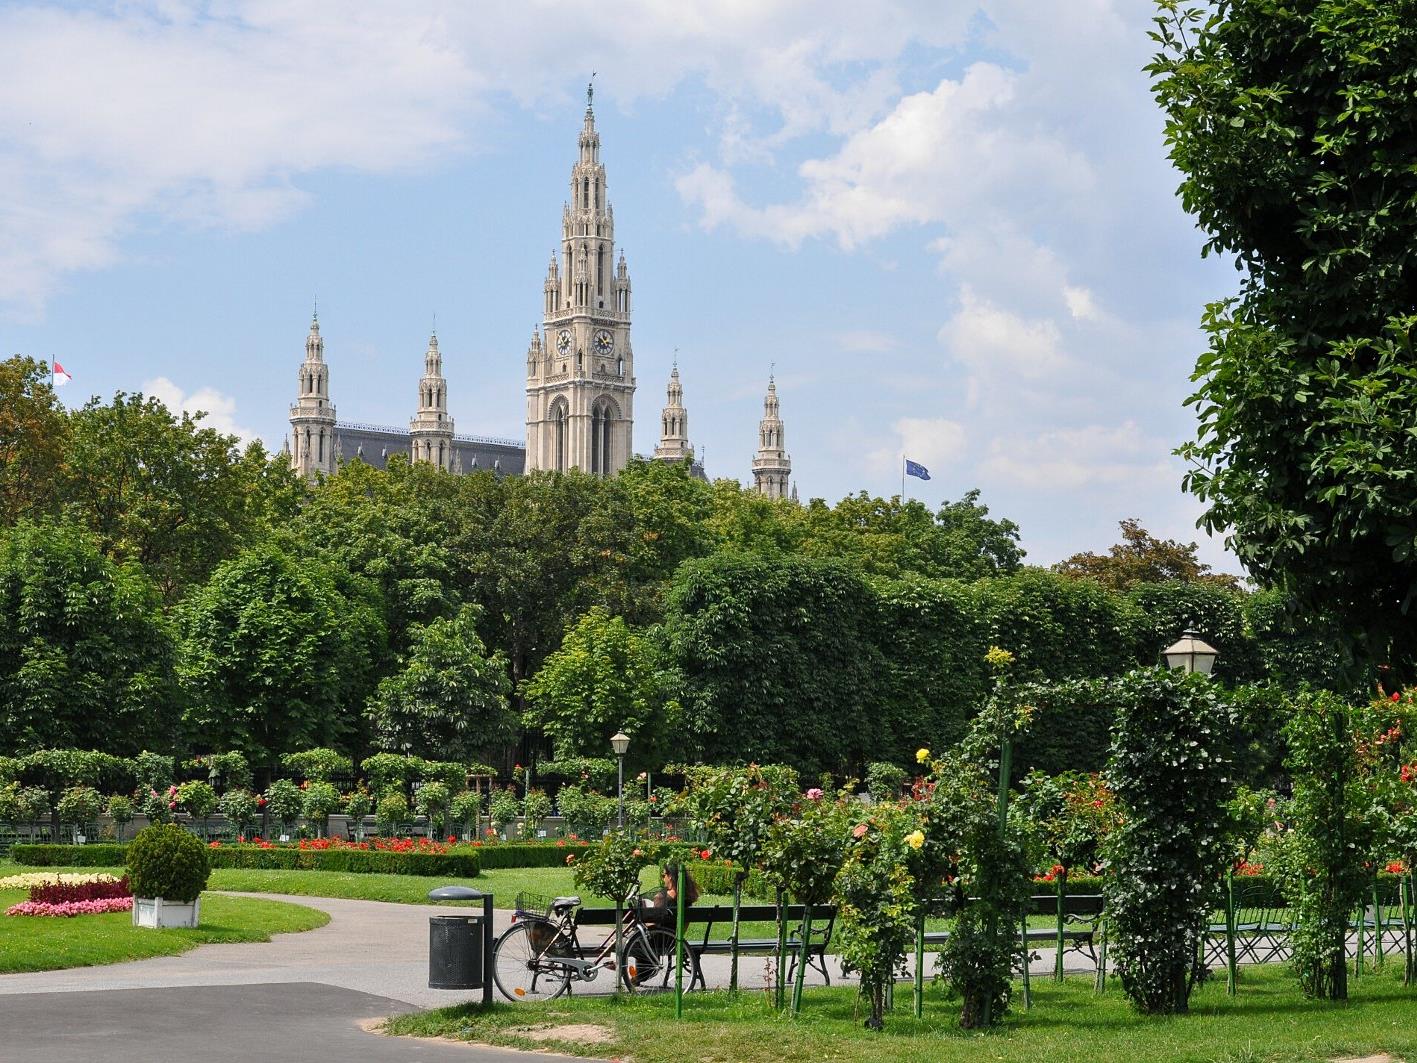 Wien liegt bei internationalen Touristen weiterhin voll im Trend.